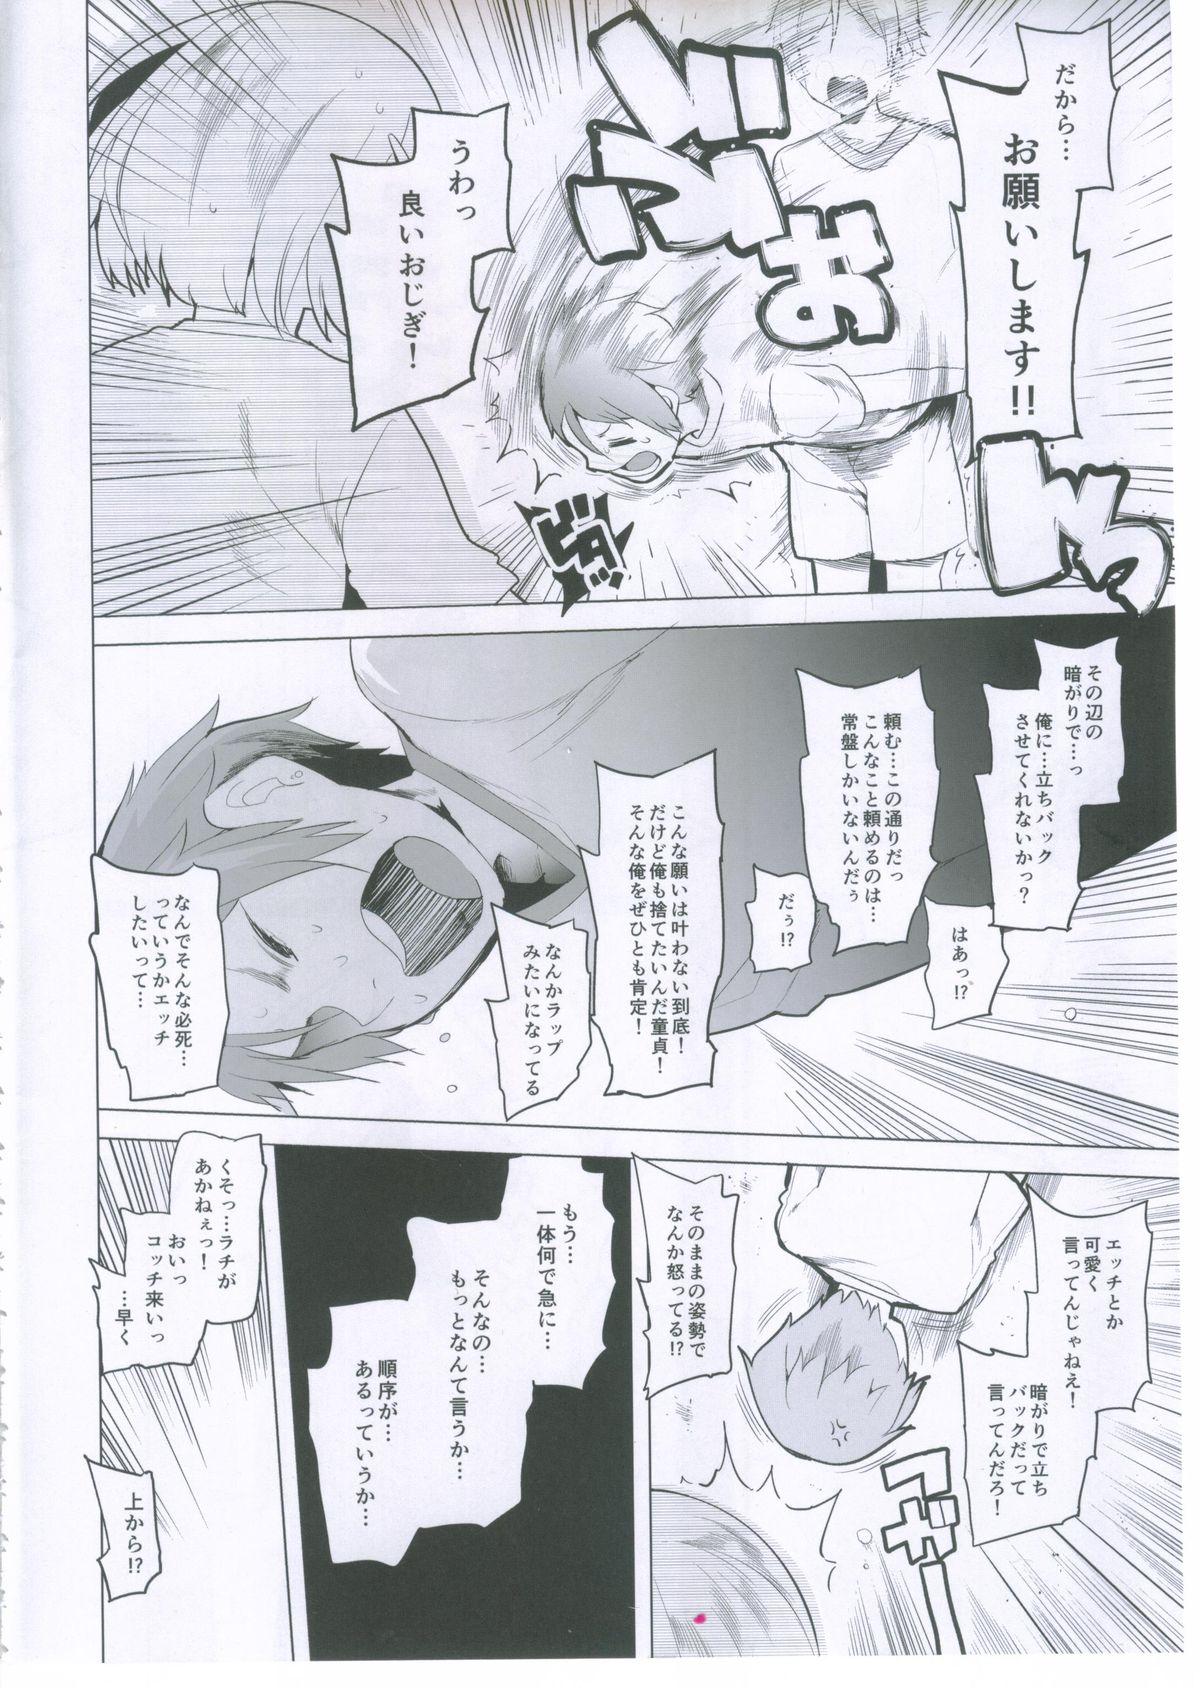 Gloryhole Rinkai Gakkou de Aokan Tachi-Back Dekinai Yatsu wa Makeinu nandesu yo!! - Tamako market Puba - Page 3